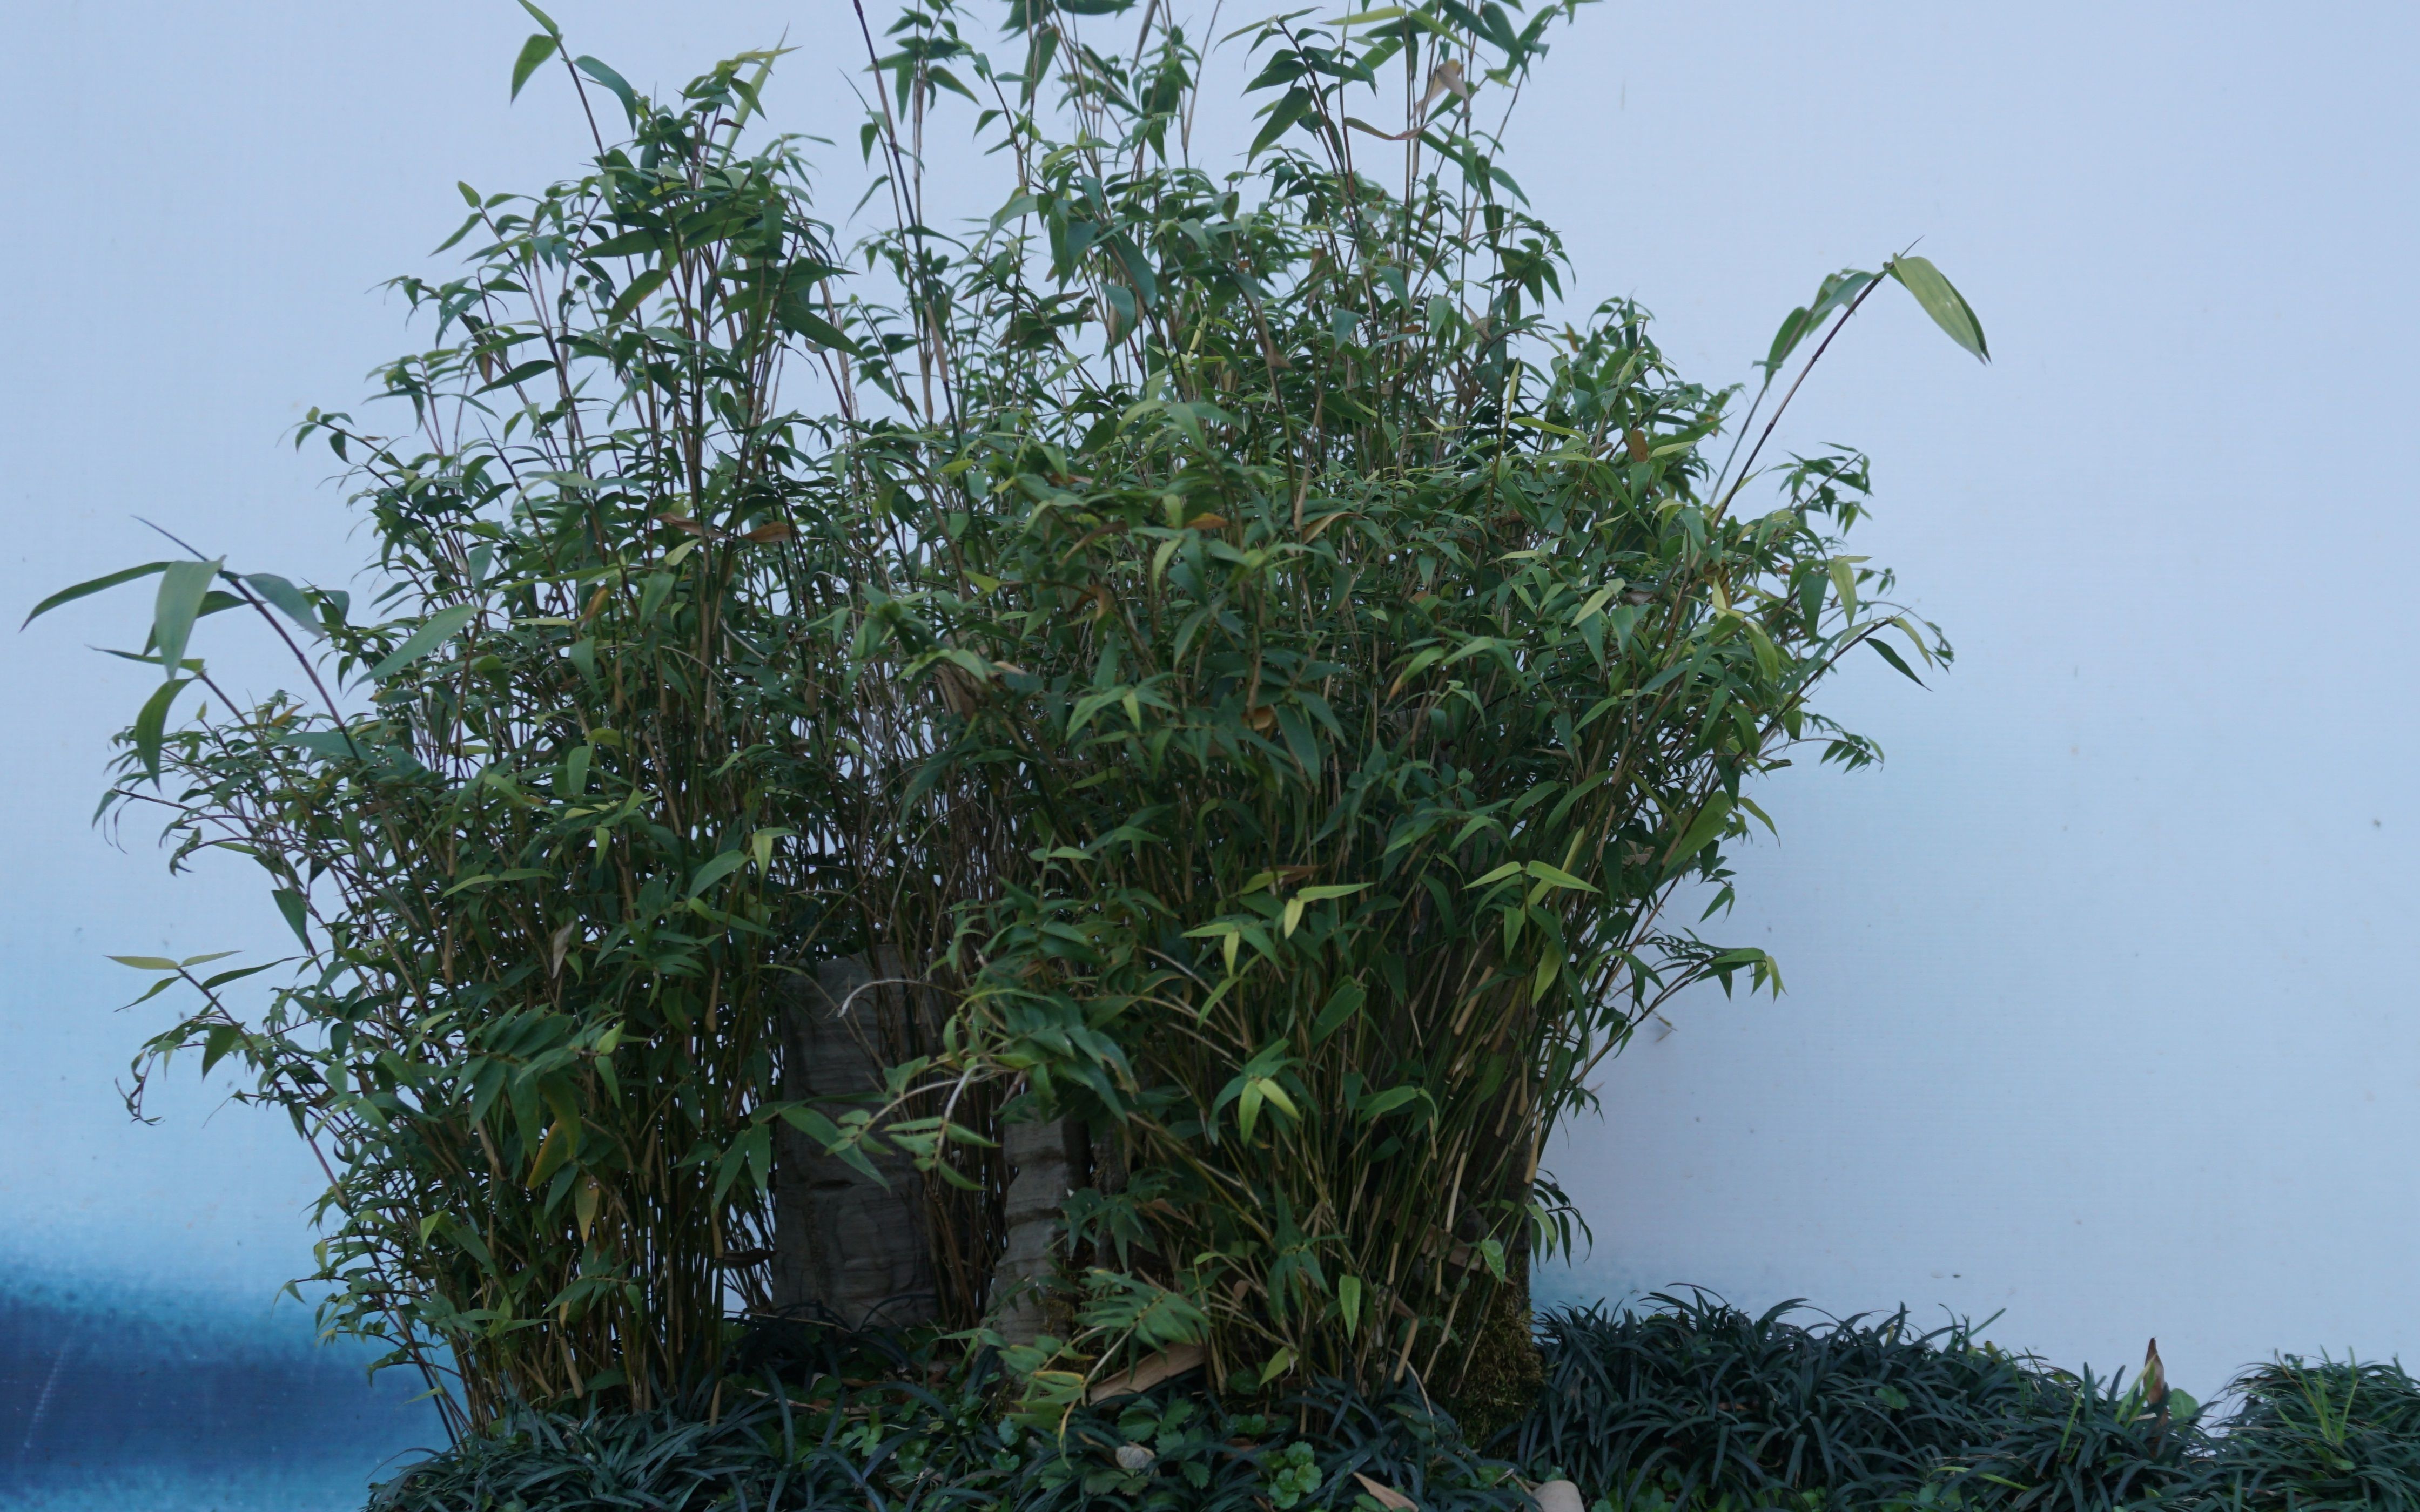 迷你版竹子凤尾竹植株矮小最适合做家庭盆栽啦